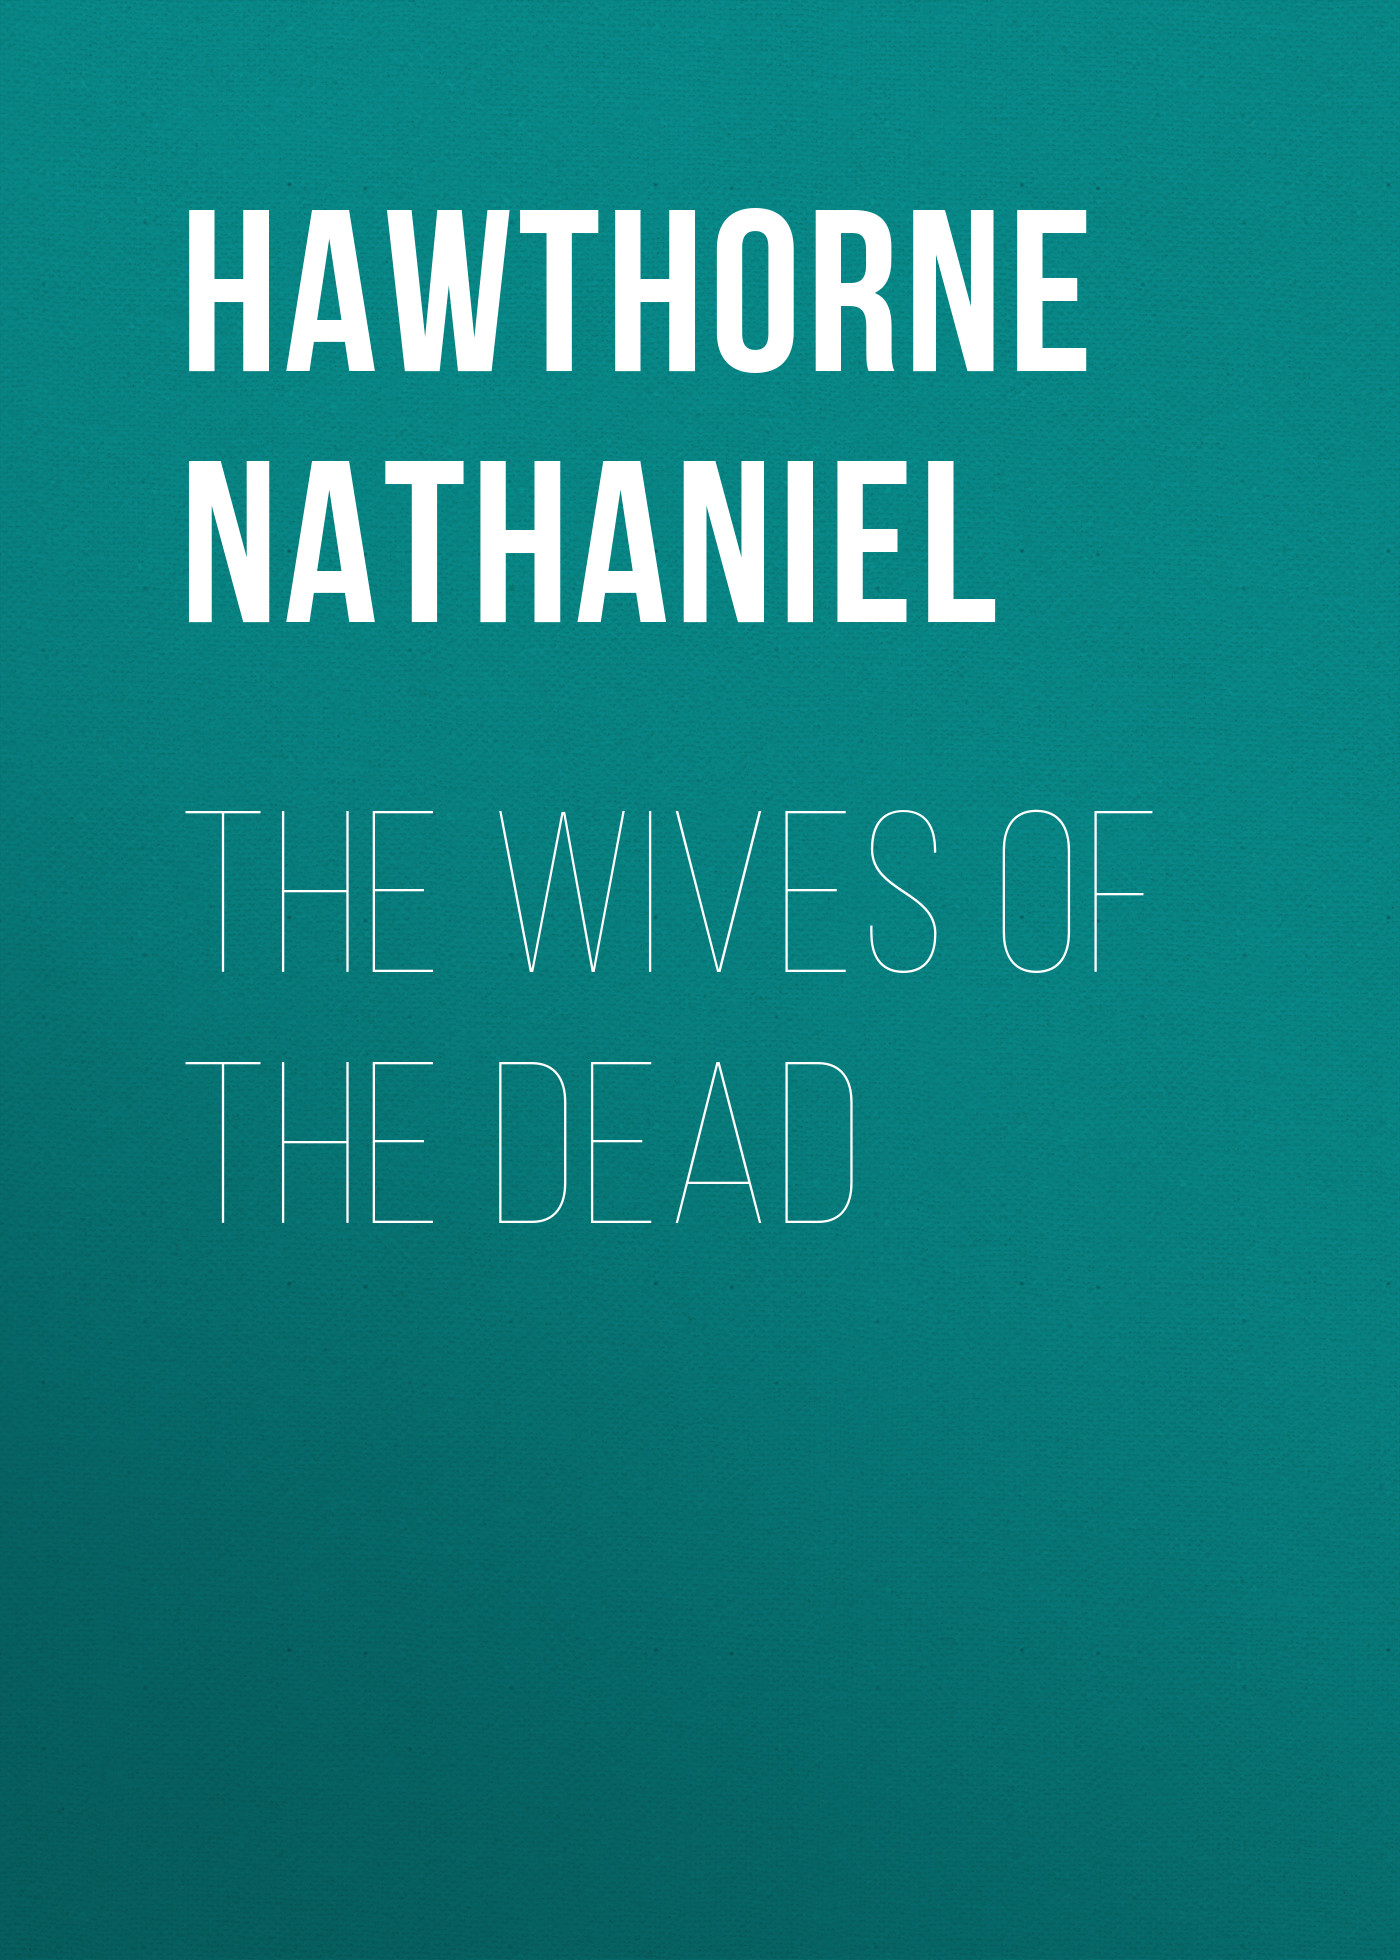 Книга The Wives of the Dead из серии , созданная Nathaniel Hawthorne, может относится к жанру Литература 19 века, Зарубежная старинная литература, Зарубежная классика. Стоимость электронной книги The Wives of the Dead с идентификатором 25561484 составляет 0 руб.